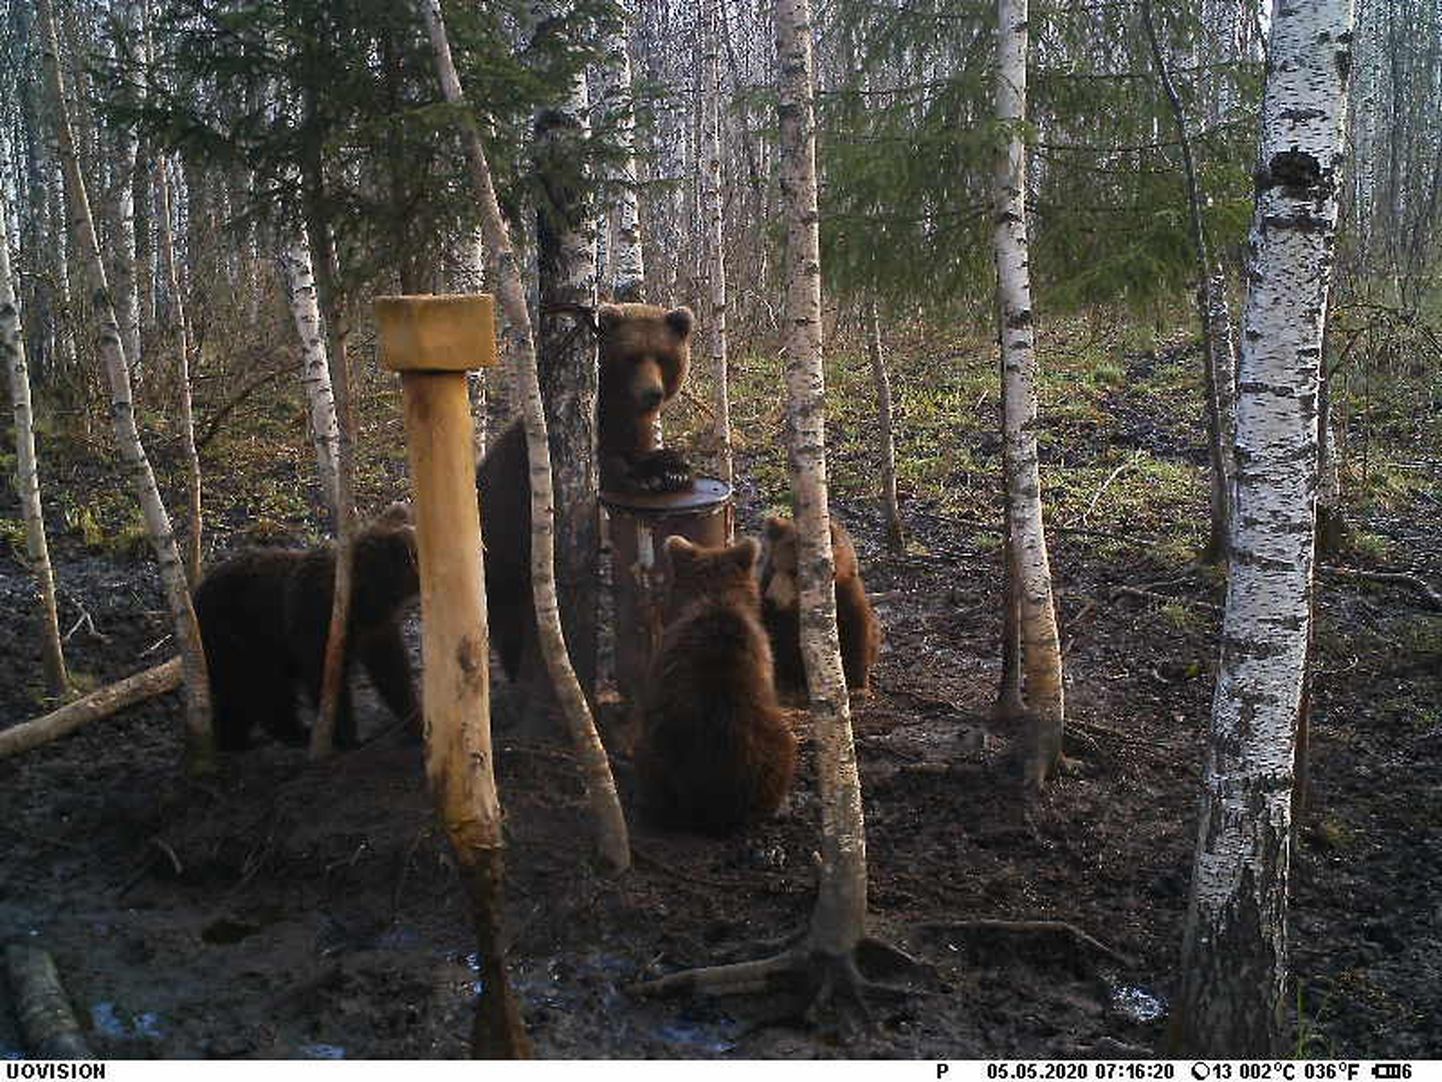 Jahimeeste rajakaamerate ees toimetavad karud päris sageli; need mõmmikud on jäädvustatud 5. mail.